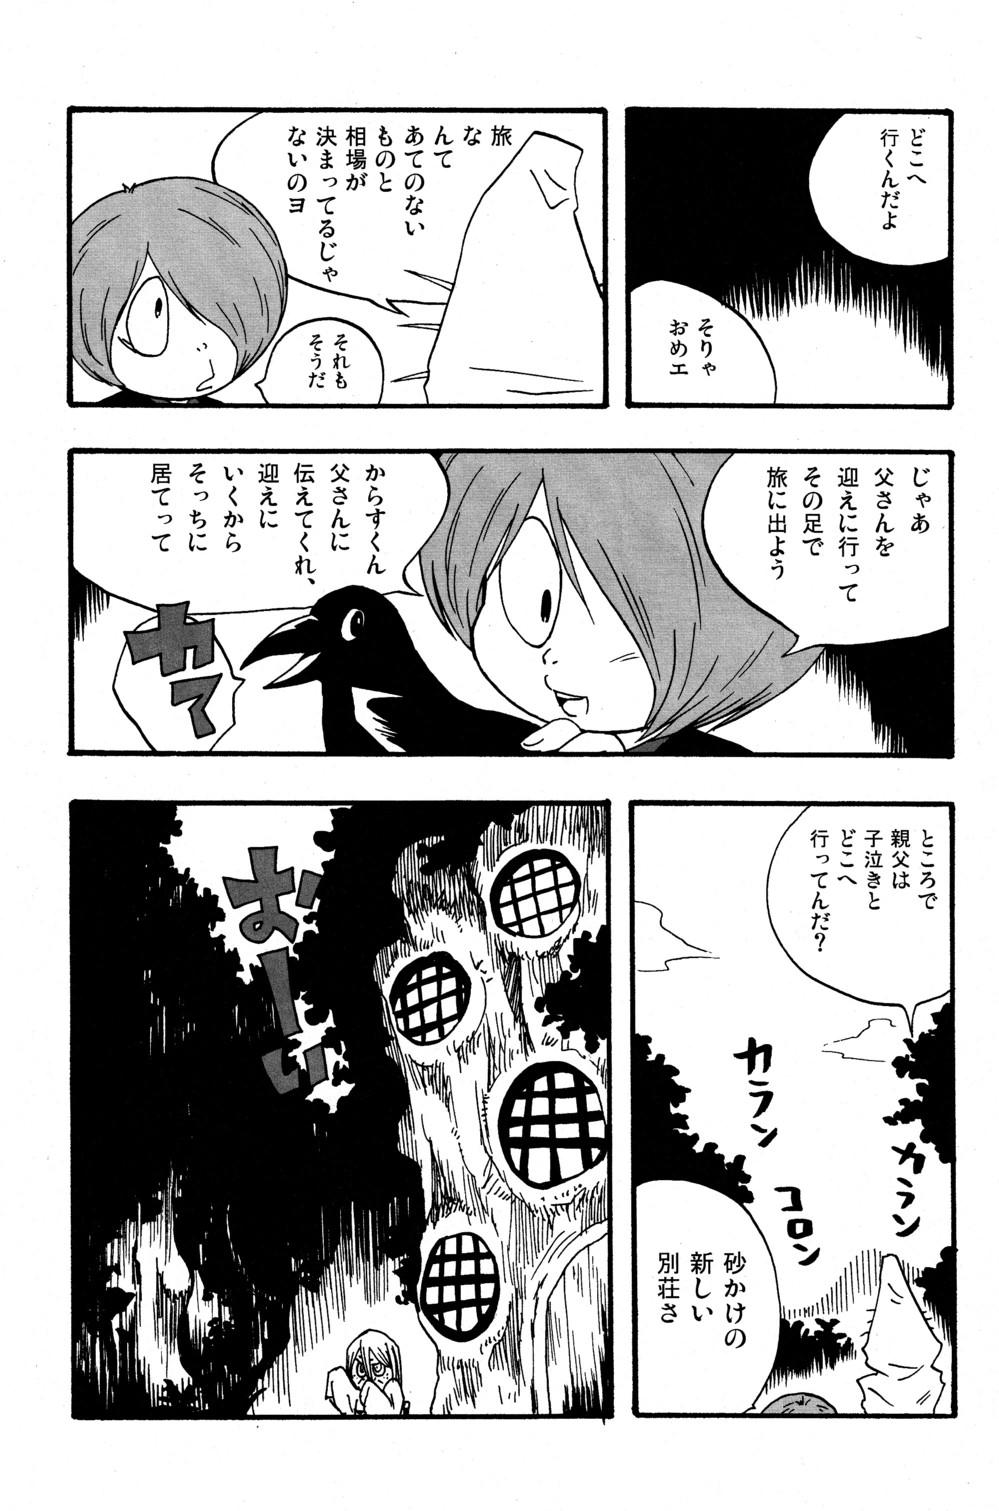 Pornstars Kawaisa Amatte Nantoka Hyakubai - Gegege no kitarou Monster - Page 11